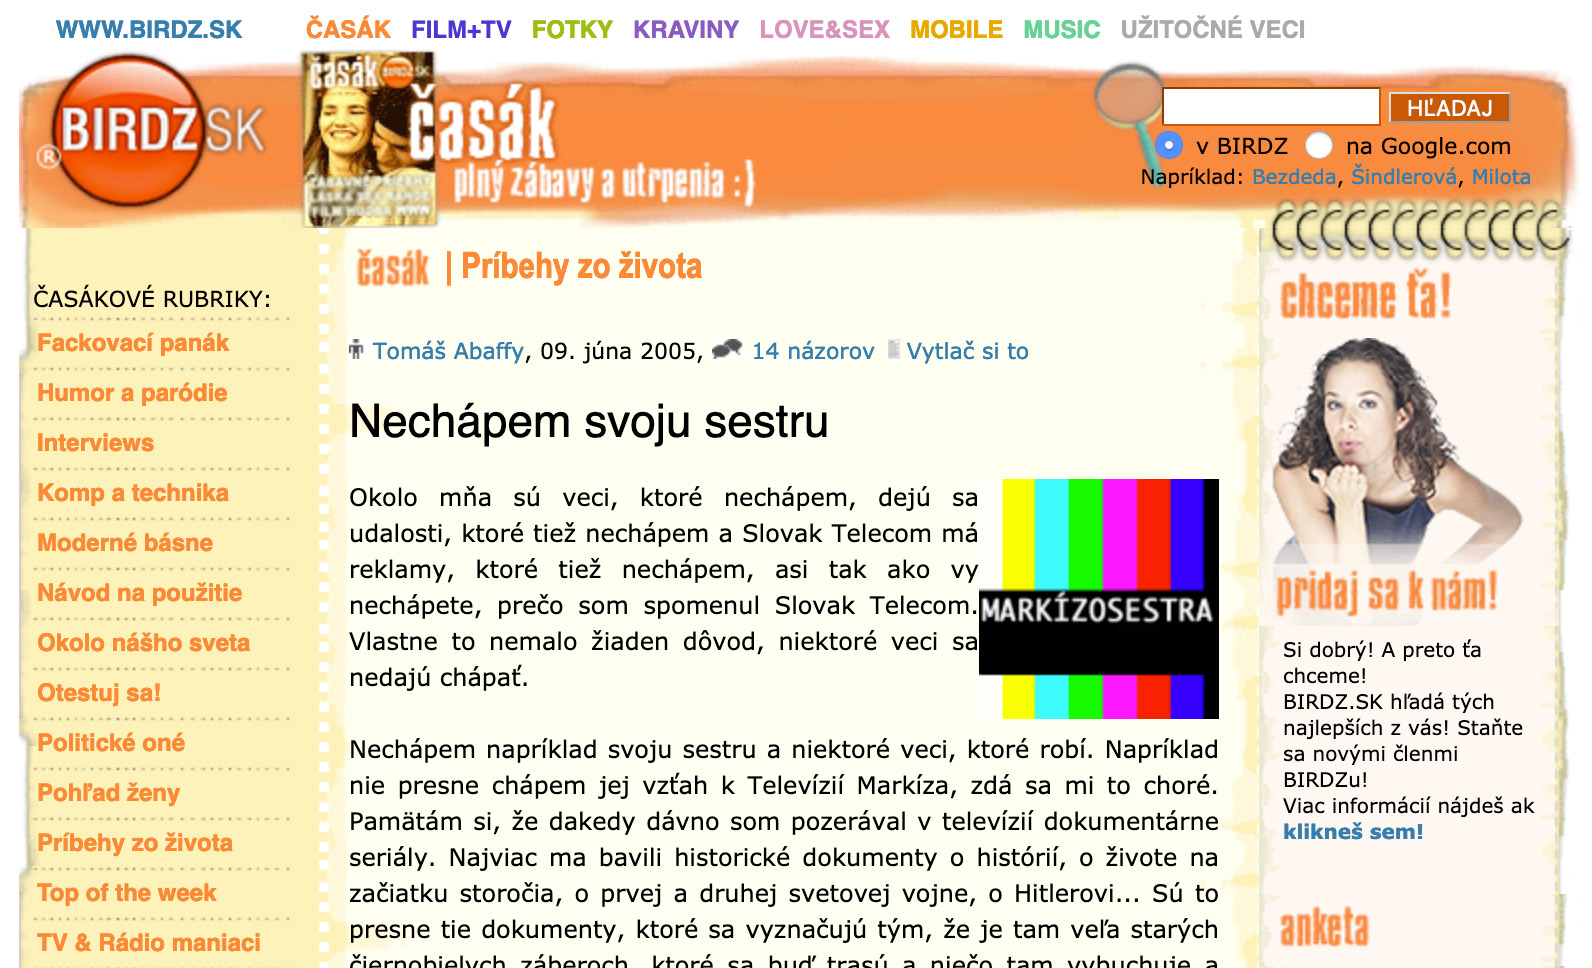 Dizajn článku na Birdz.sk v roku 2005